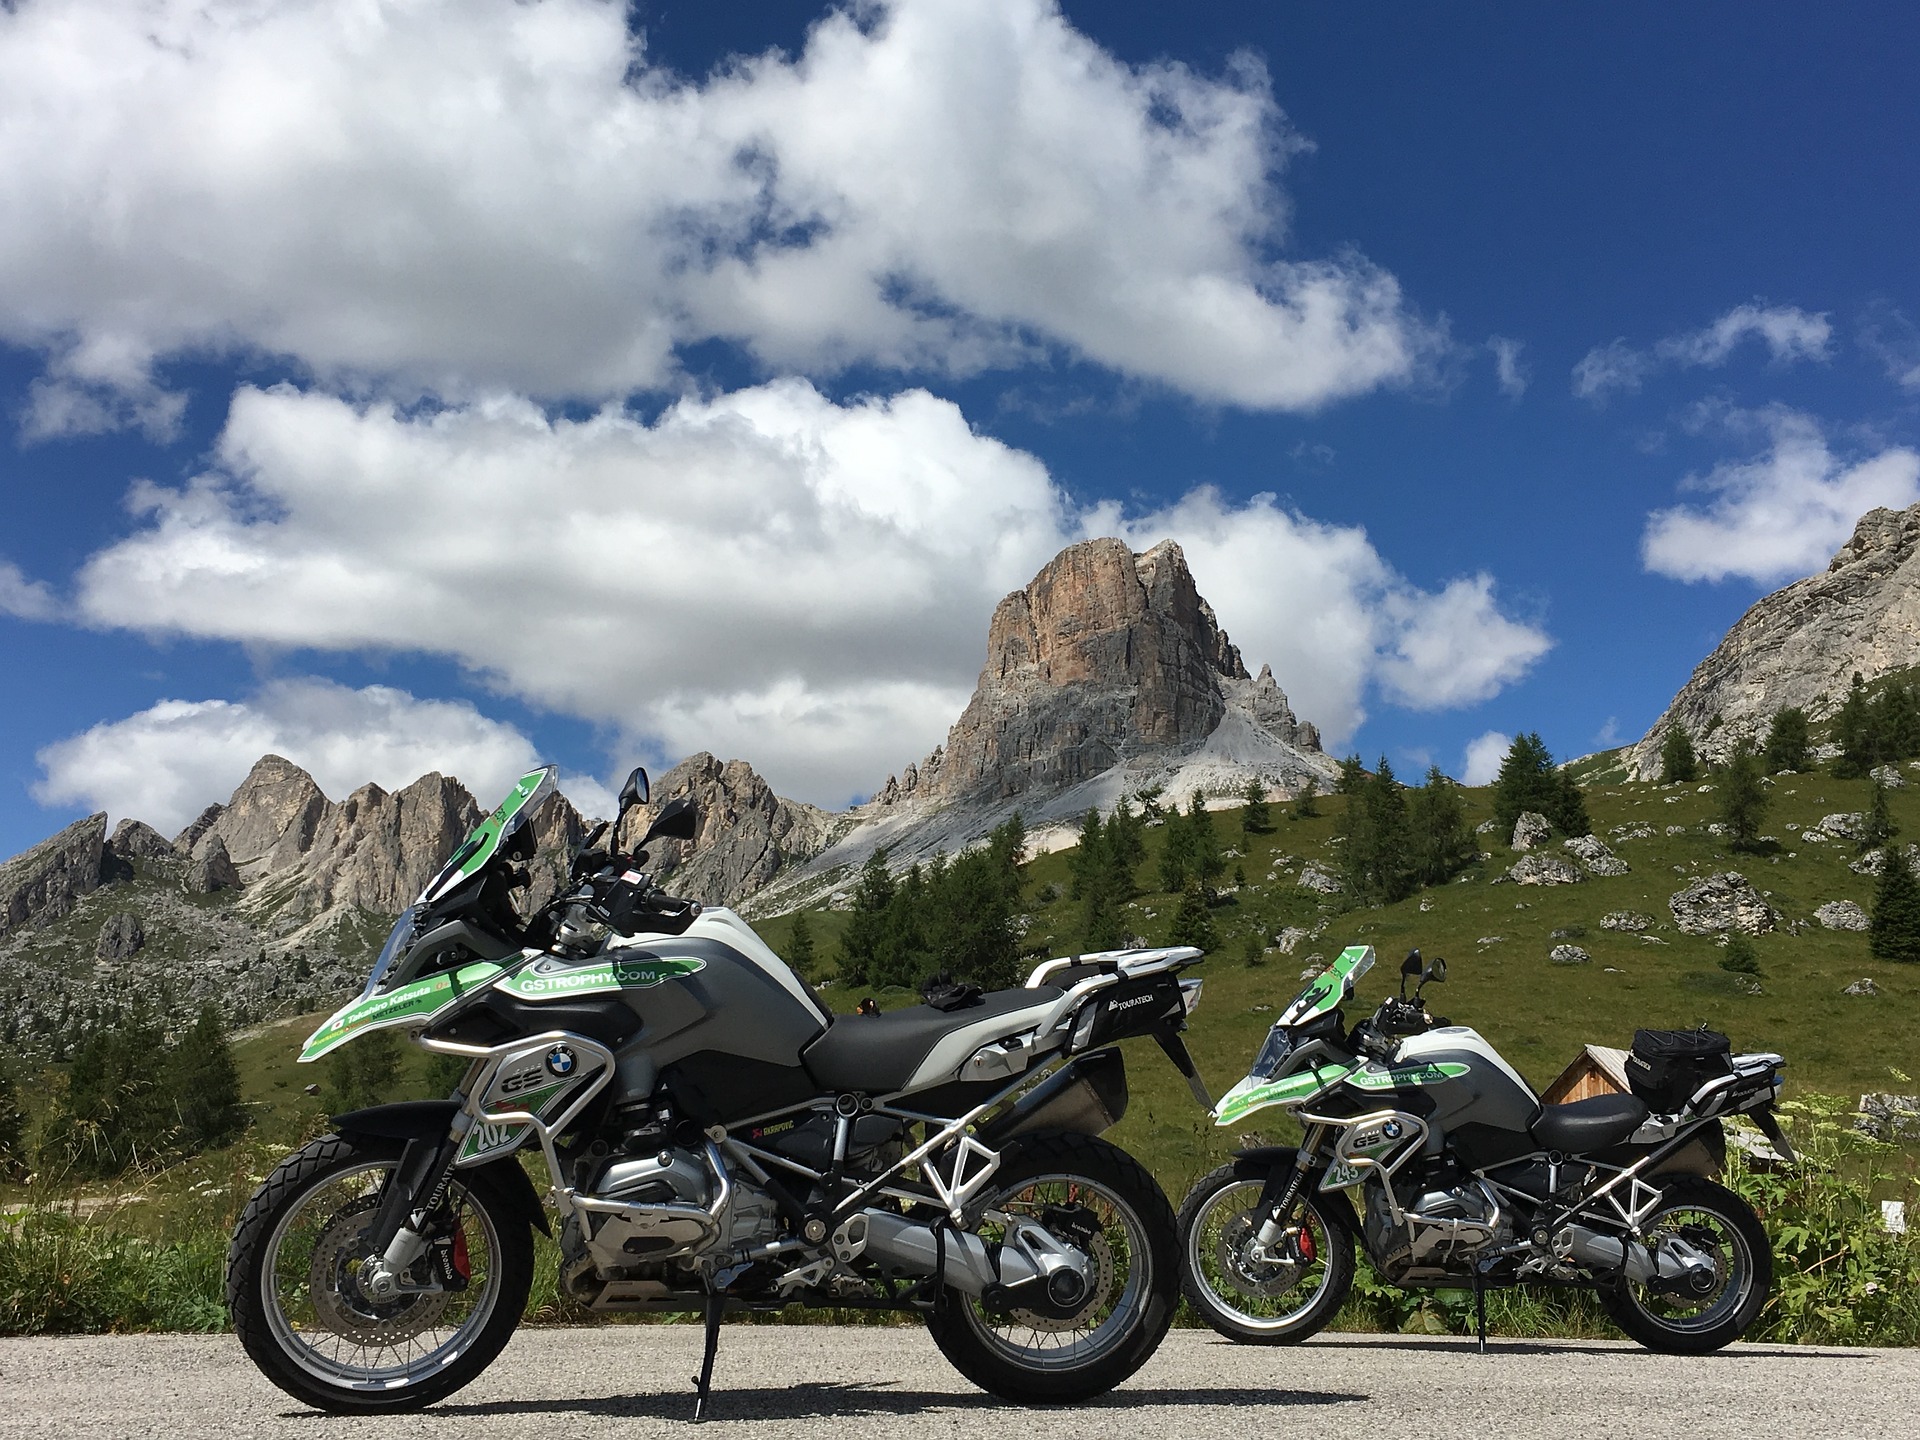 Road trip moto : comment organiser une virée à moto seul ou entre amis ?